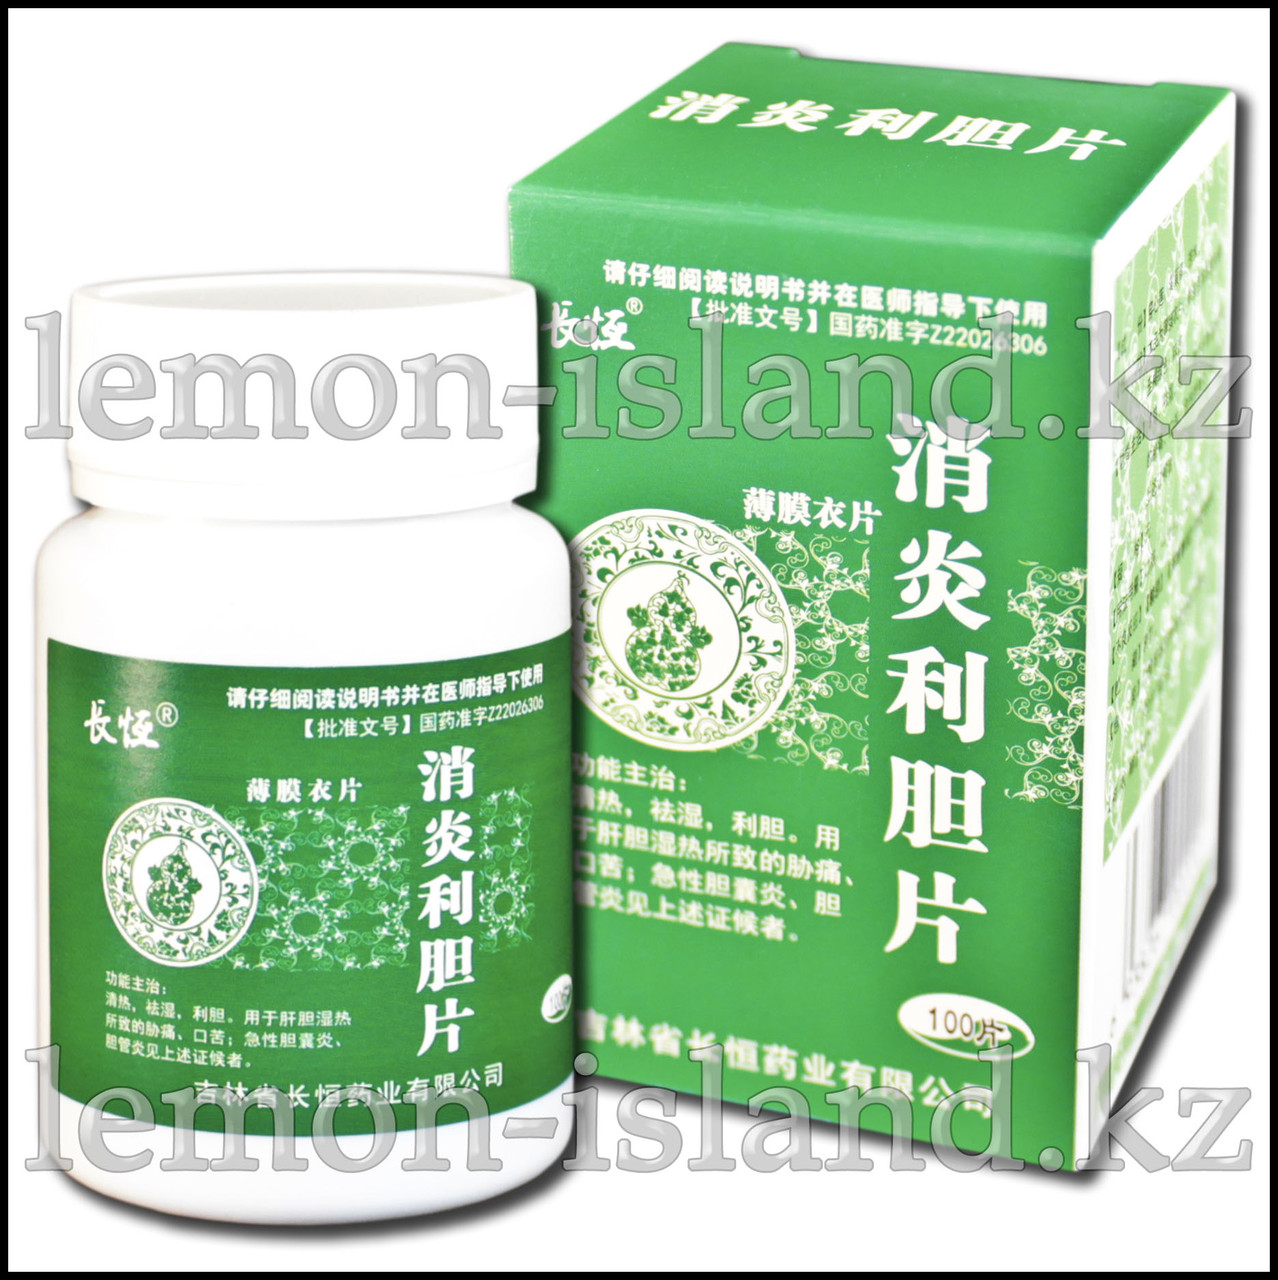 Таблетки "Лидань" (Xiaoyan Lidan Pian) для лечения воспалений желчного пузыря и чистки печени.